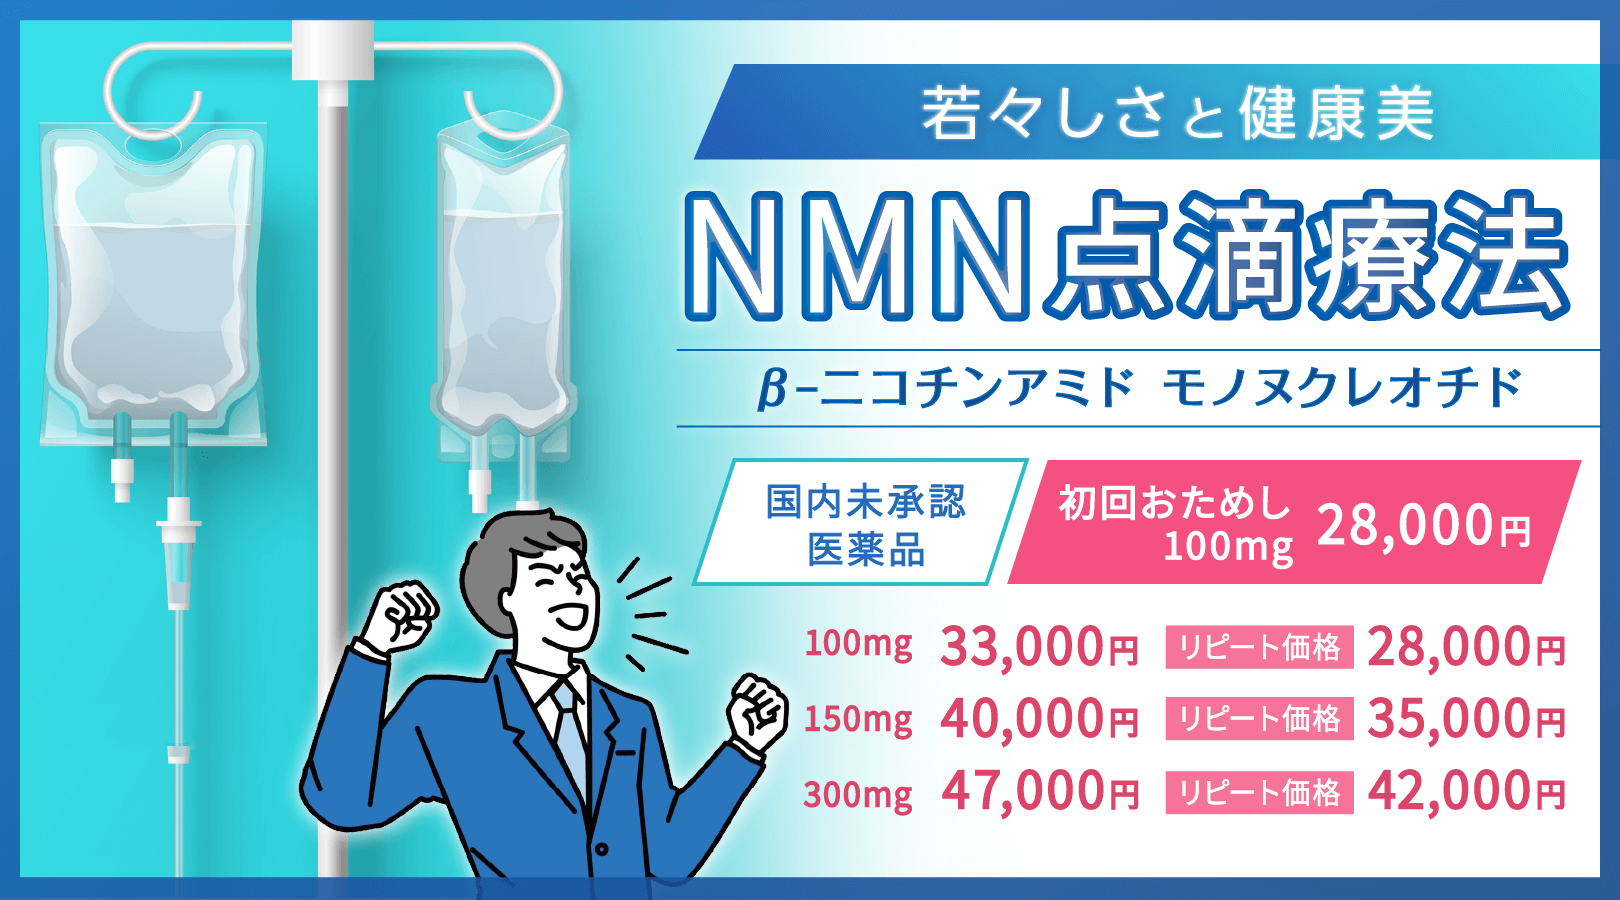 若々しさと健康美 NMN点滴療法 βｰﾆｺﾁﾝｱﾐﾄﾞ ﾓﾉﾇｸﾚｵﾁﾄﾞリピート価格設定あり 国内未承認医薬品を使用